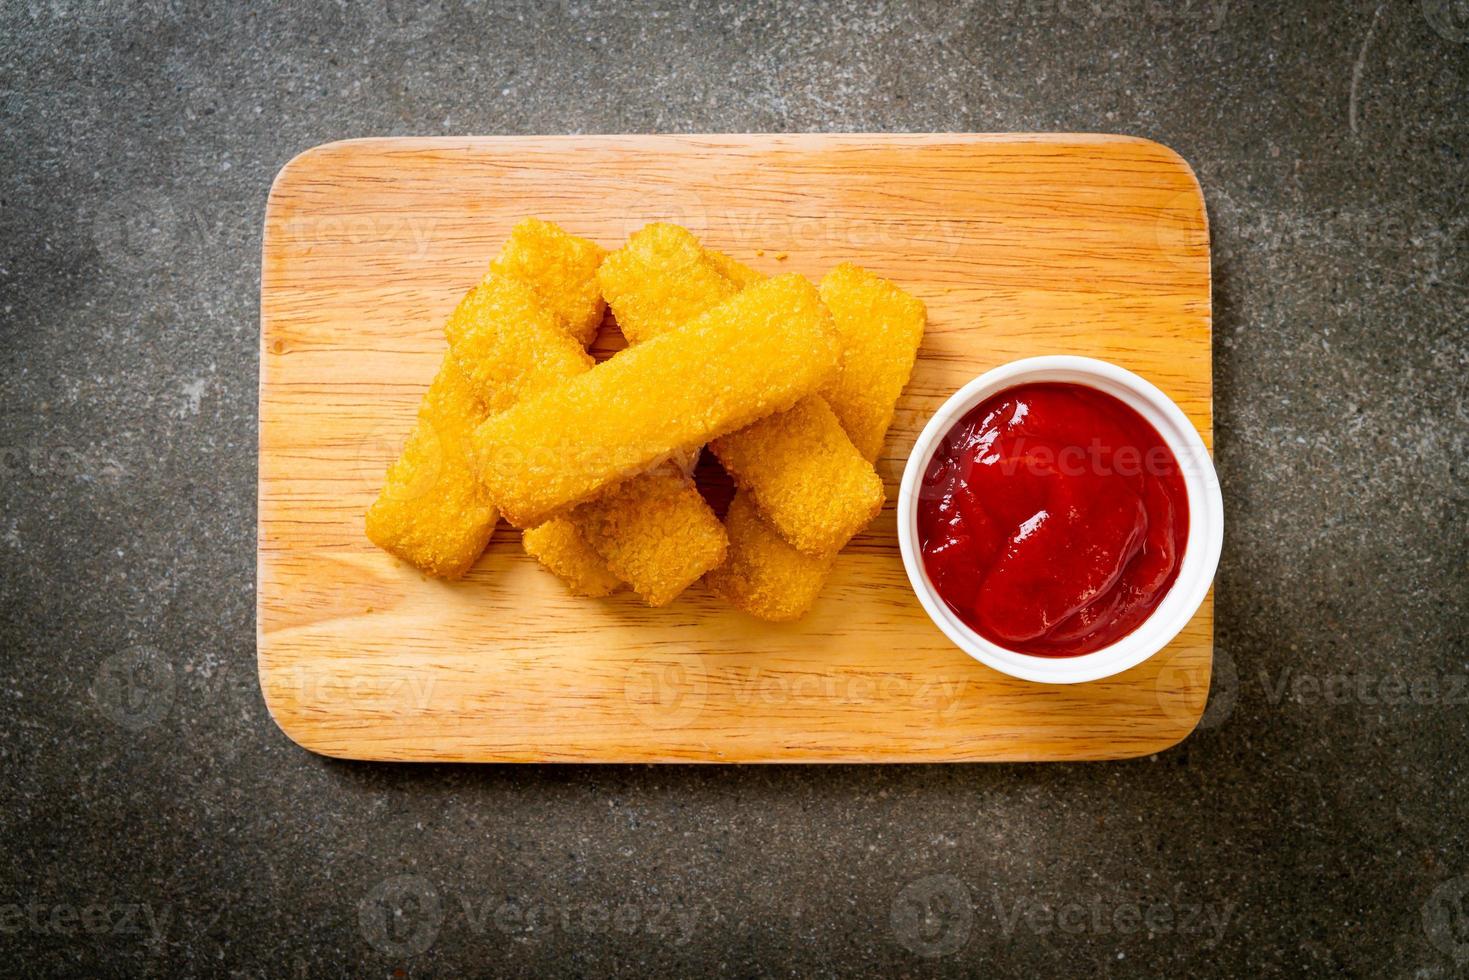 dedos de pescado frito crujiente con salsa de tomate foto